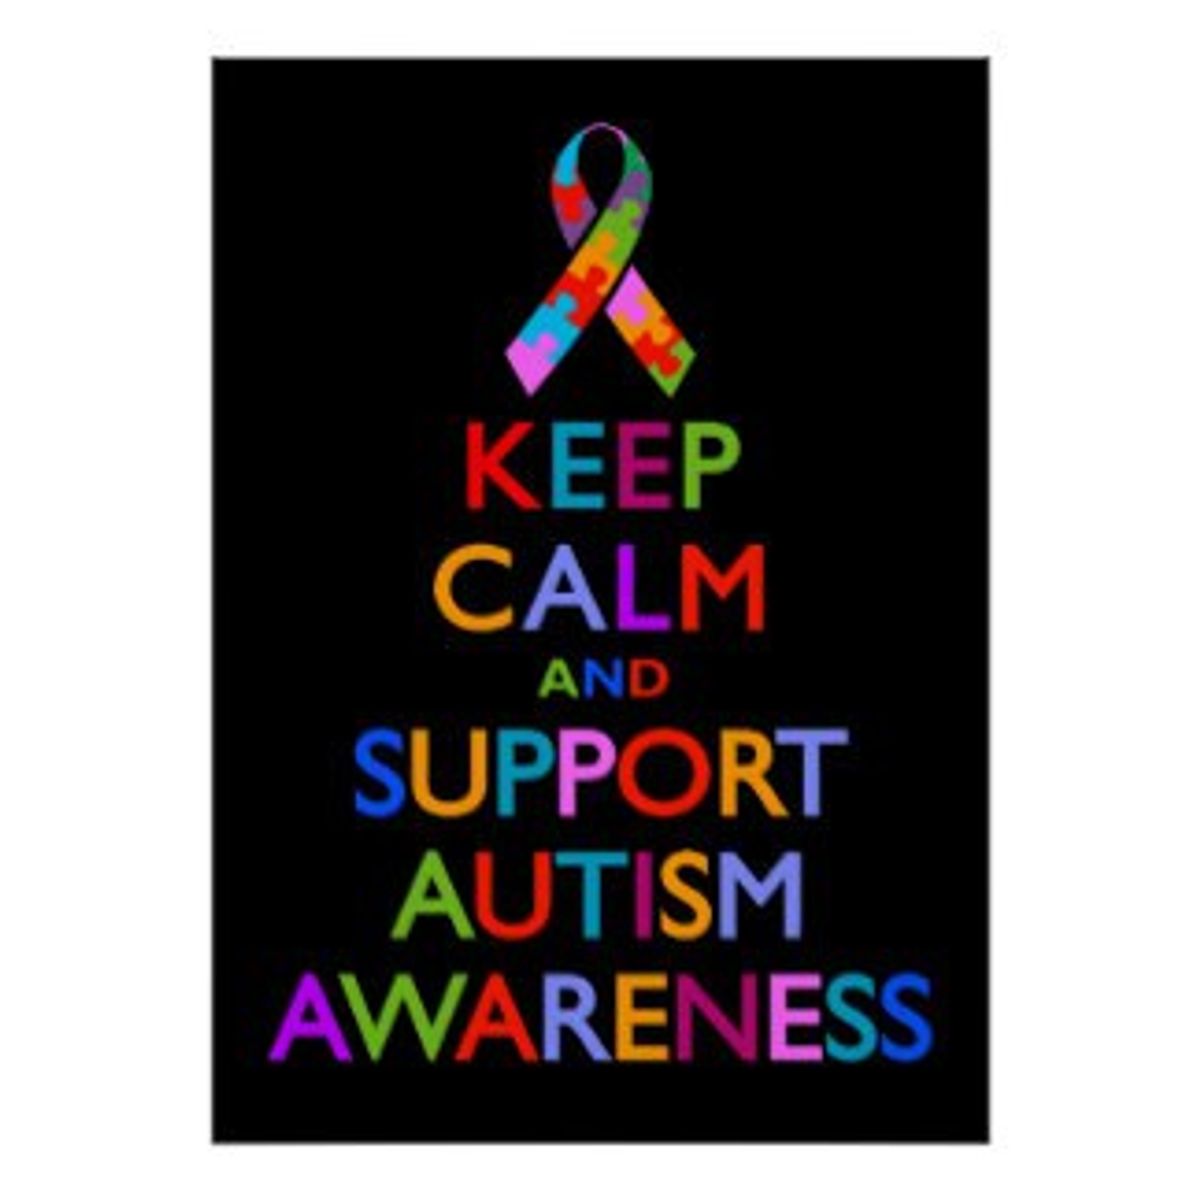 Autism Awareness in April